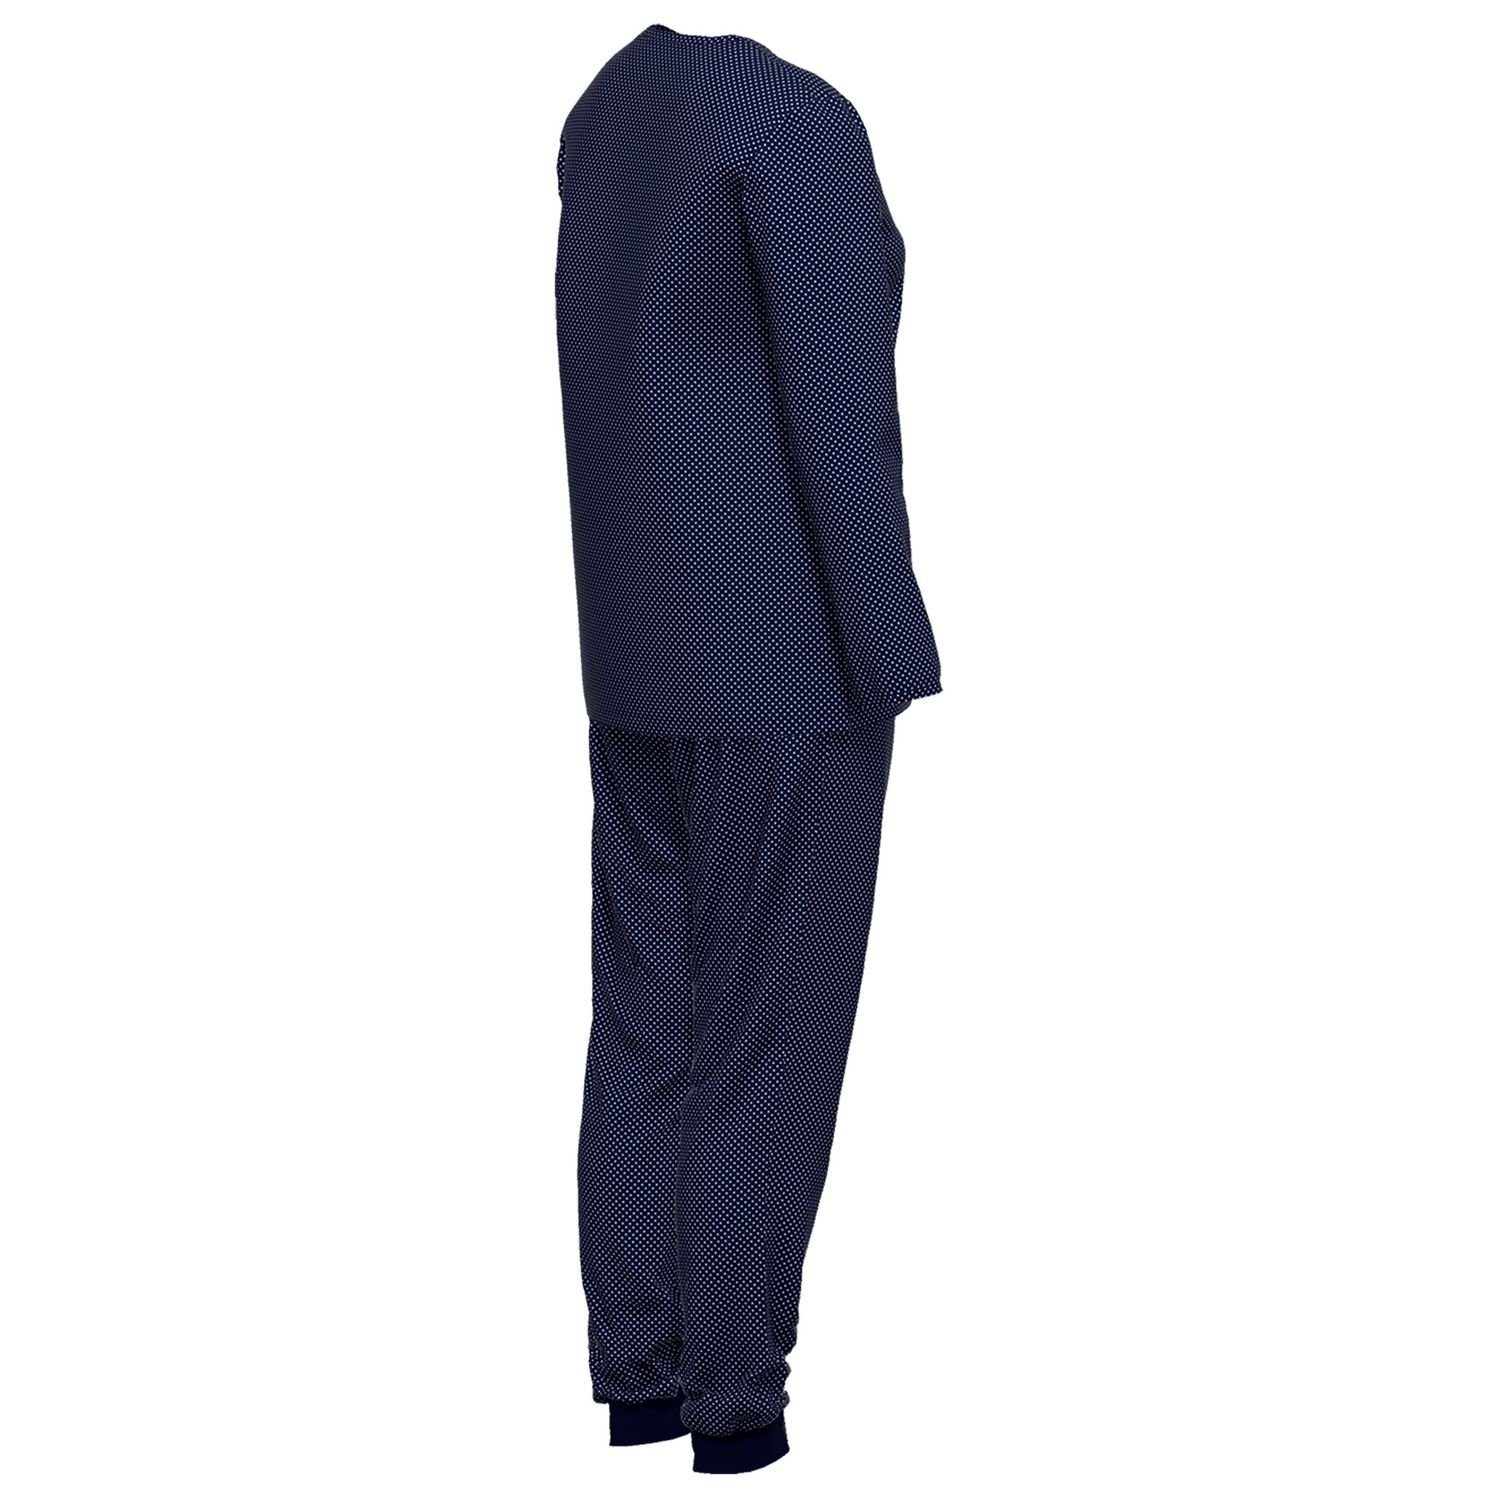 GÖTZBURG Schlafanzug mit Henley-Auschnitt, navy langarm, bequem, weiß Baumolle / gepunktet weich, reine Knöpfe